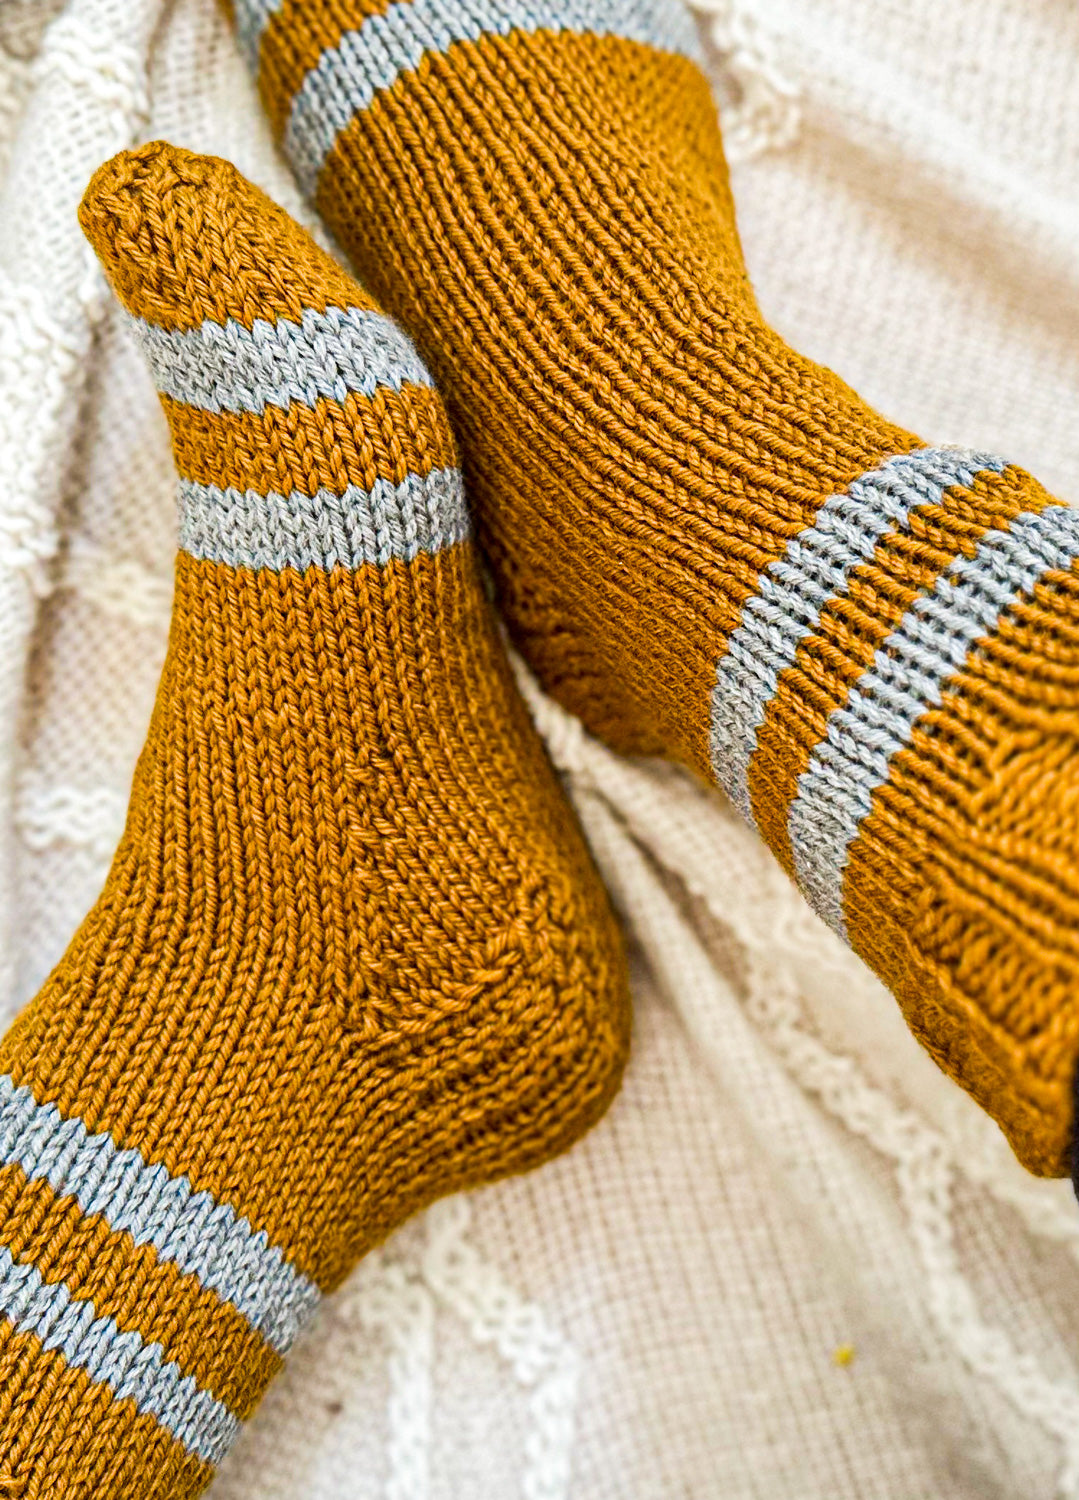 Cozy Home Socks Free Pattern x @julieannknitter – weareknitters